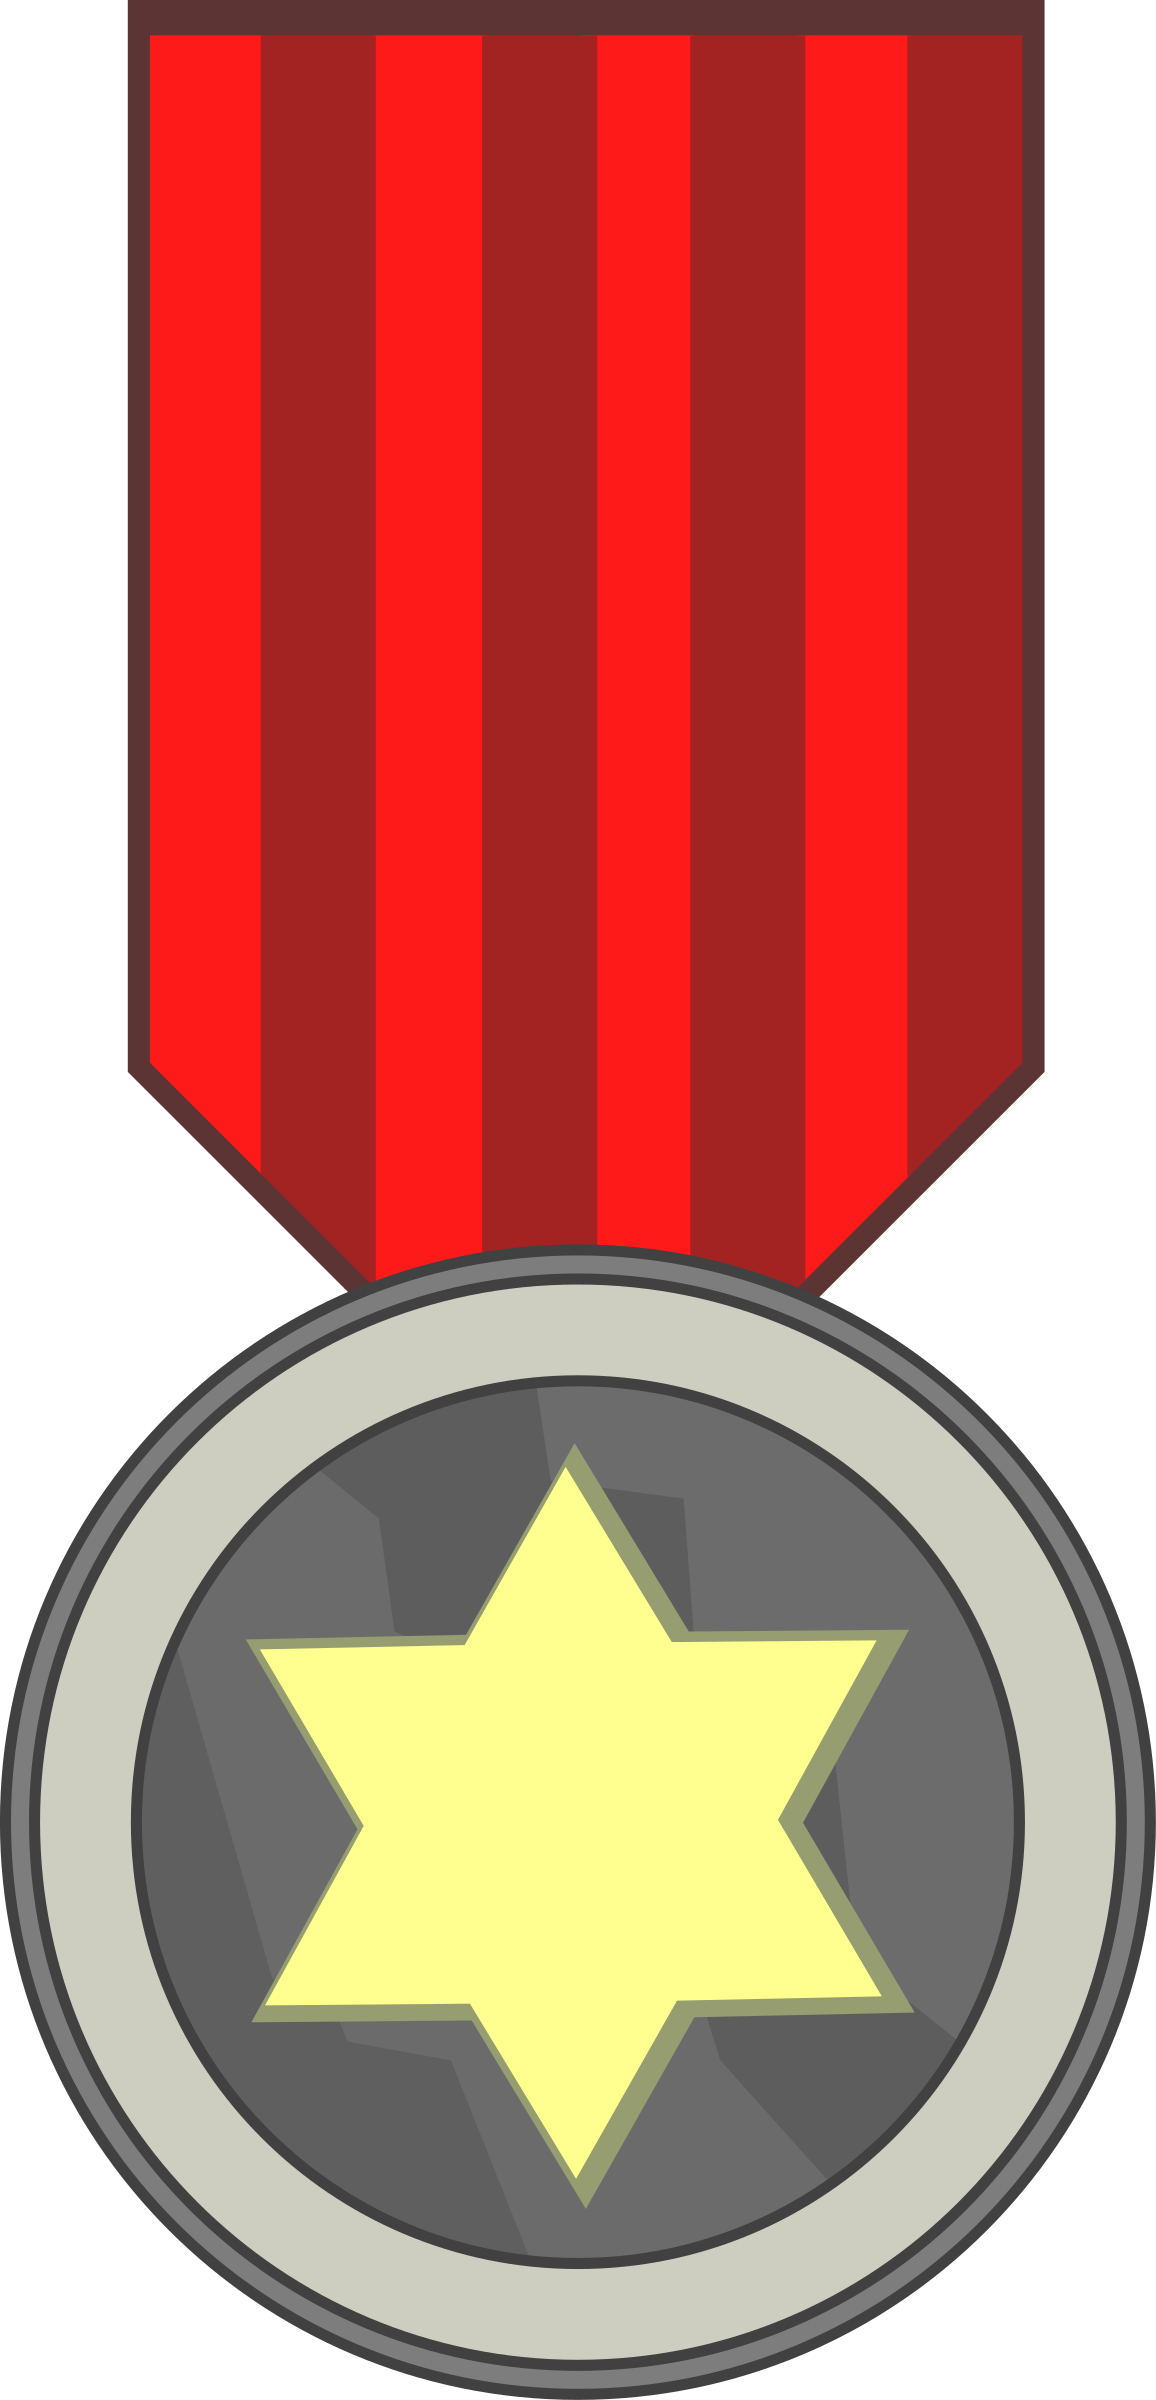 Star Award Medal